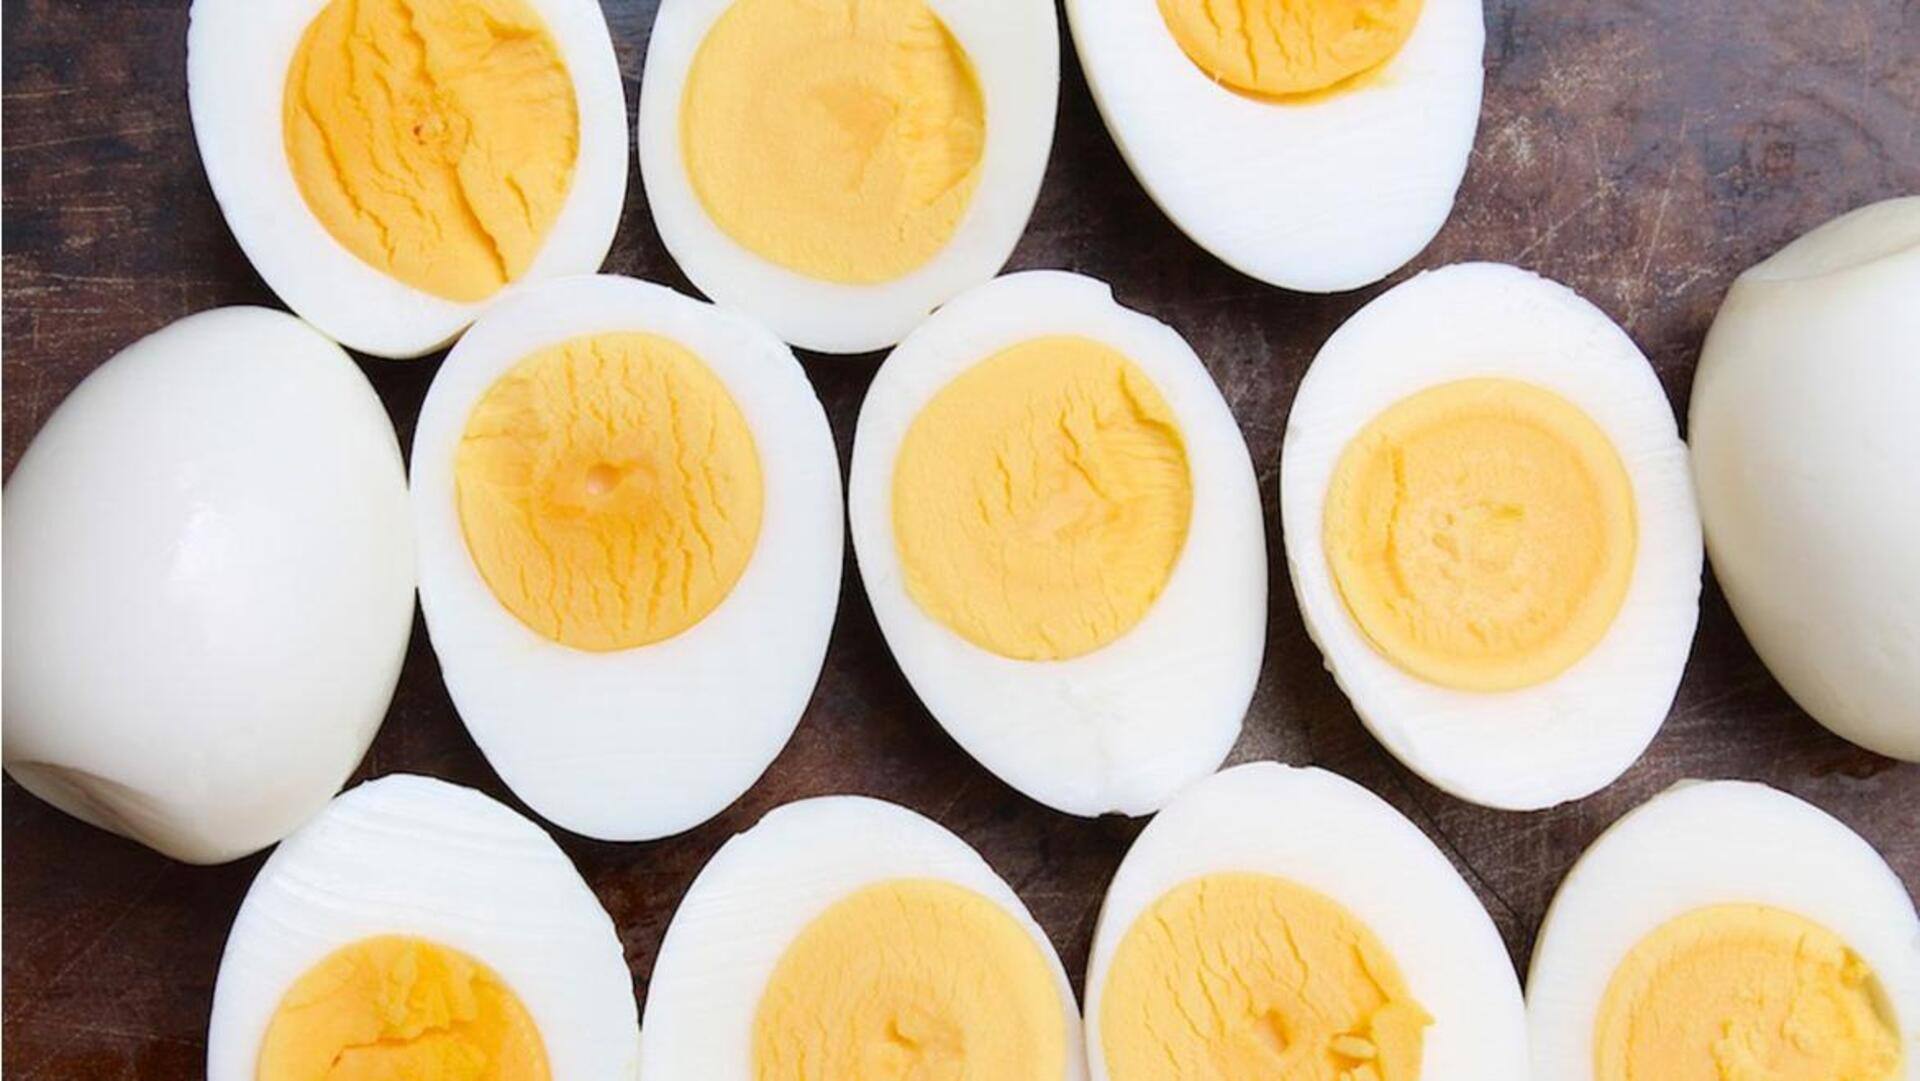 Benefits Of Eating An Egg: రోజూ ఉడికించిన గుడ్లు తింటున్నారా.. అయితే,మీ శరీరానికి ఏమి జరుగుతుందో తెలుసా.?